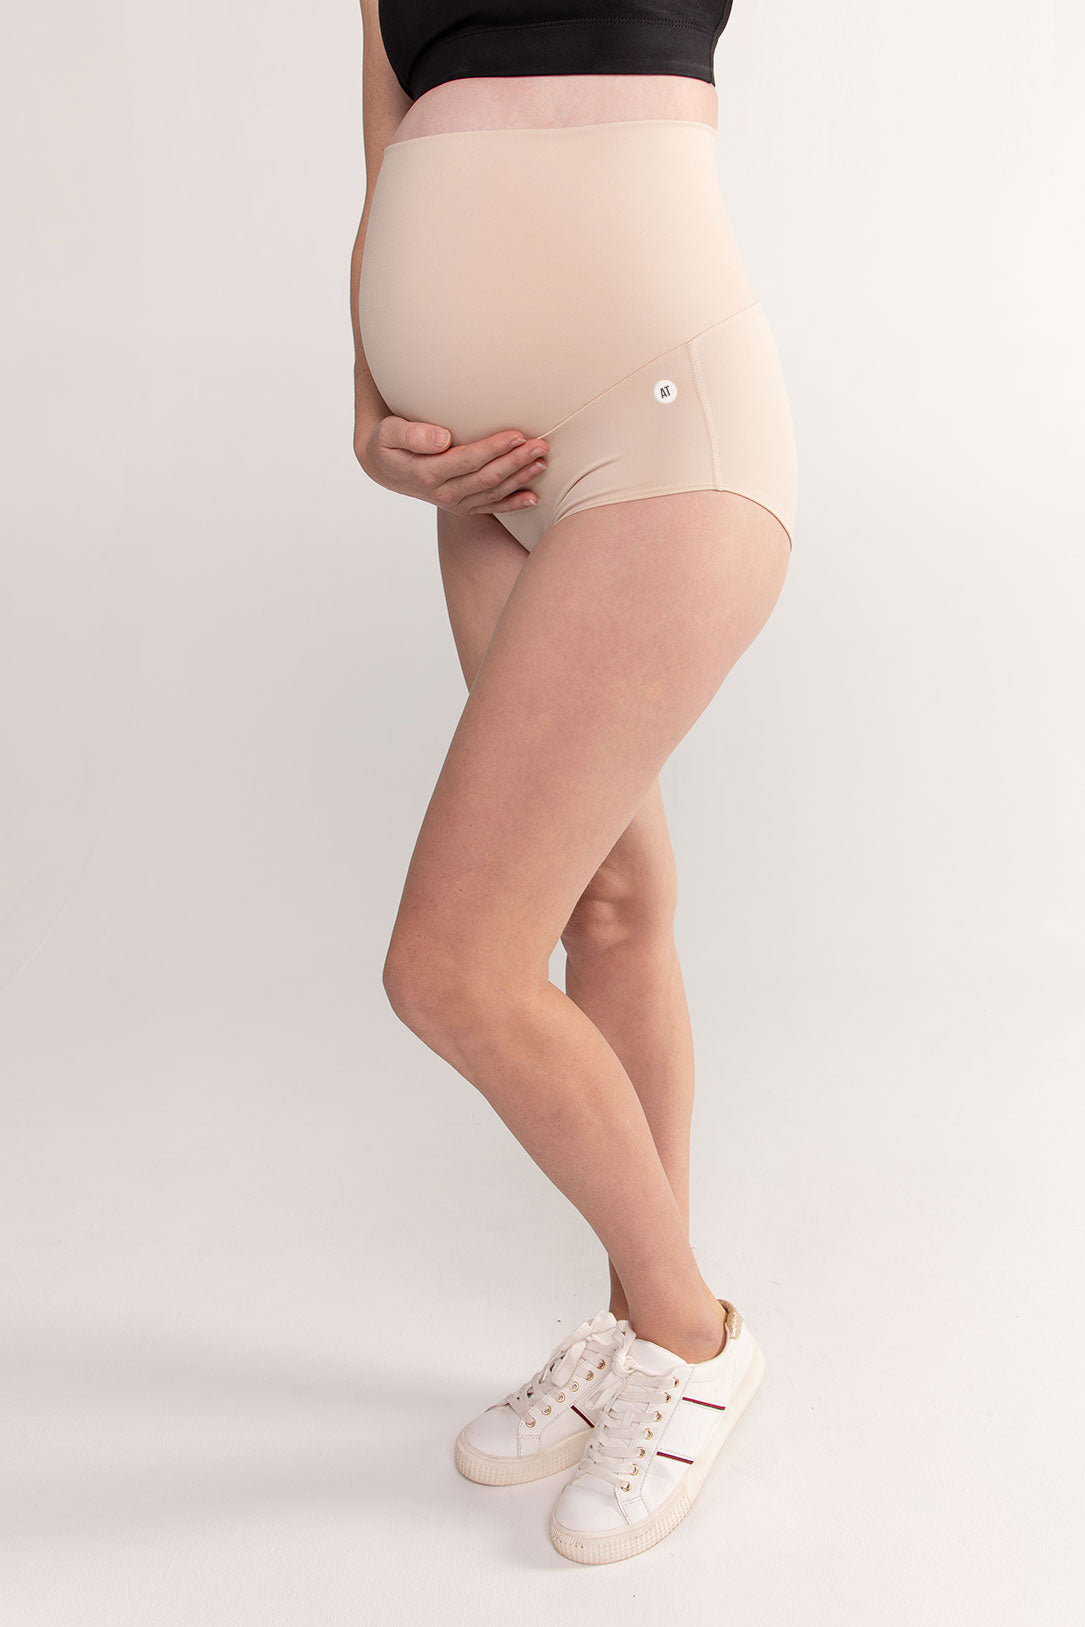 Underwear for Pregnant Women